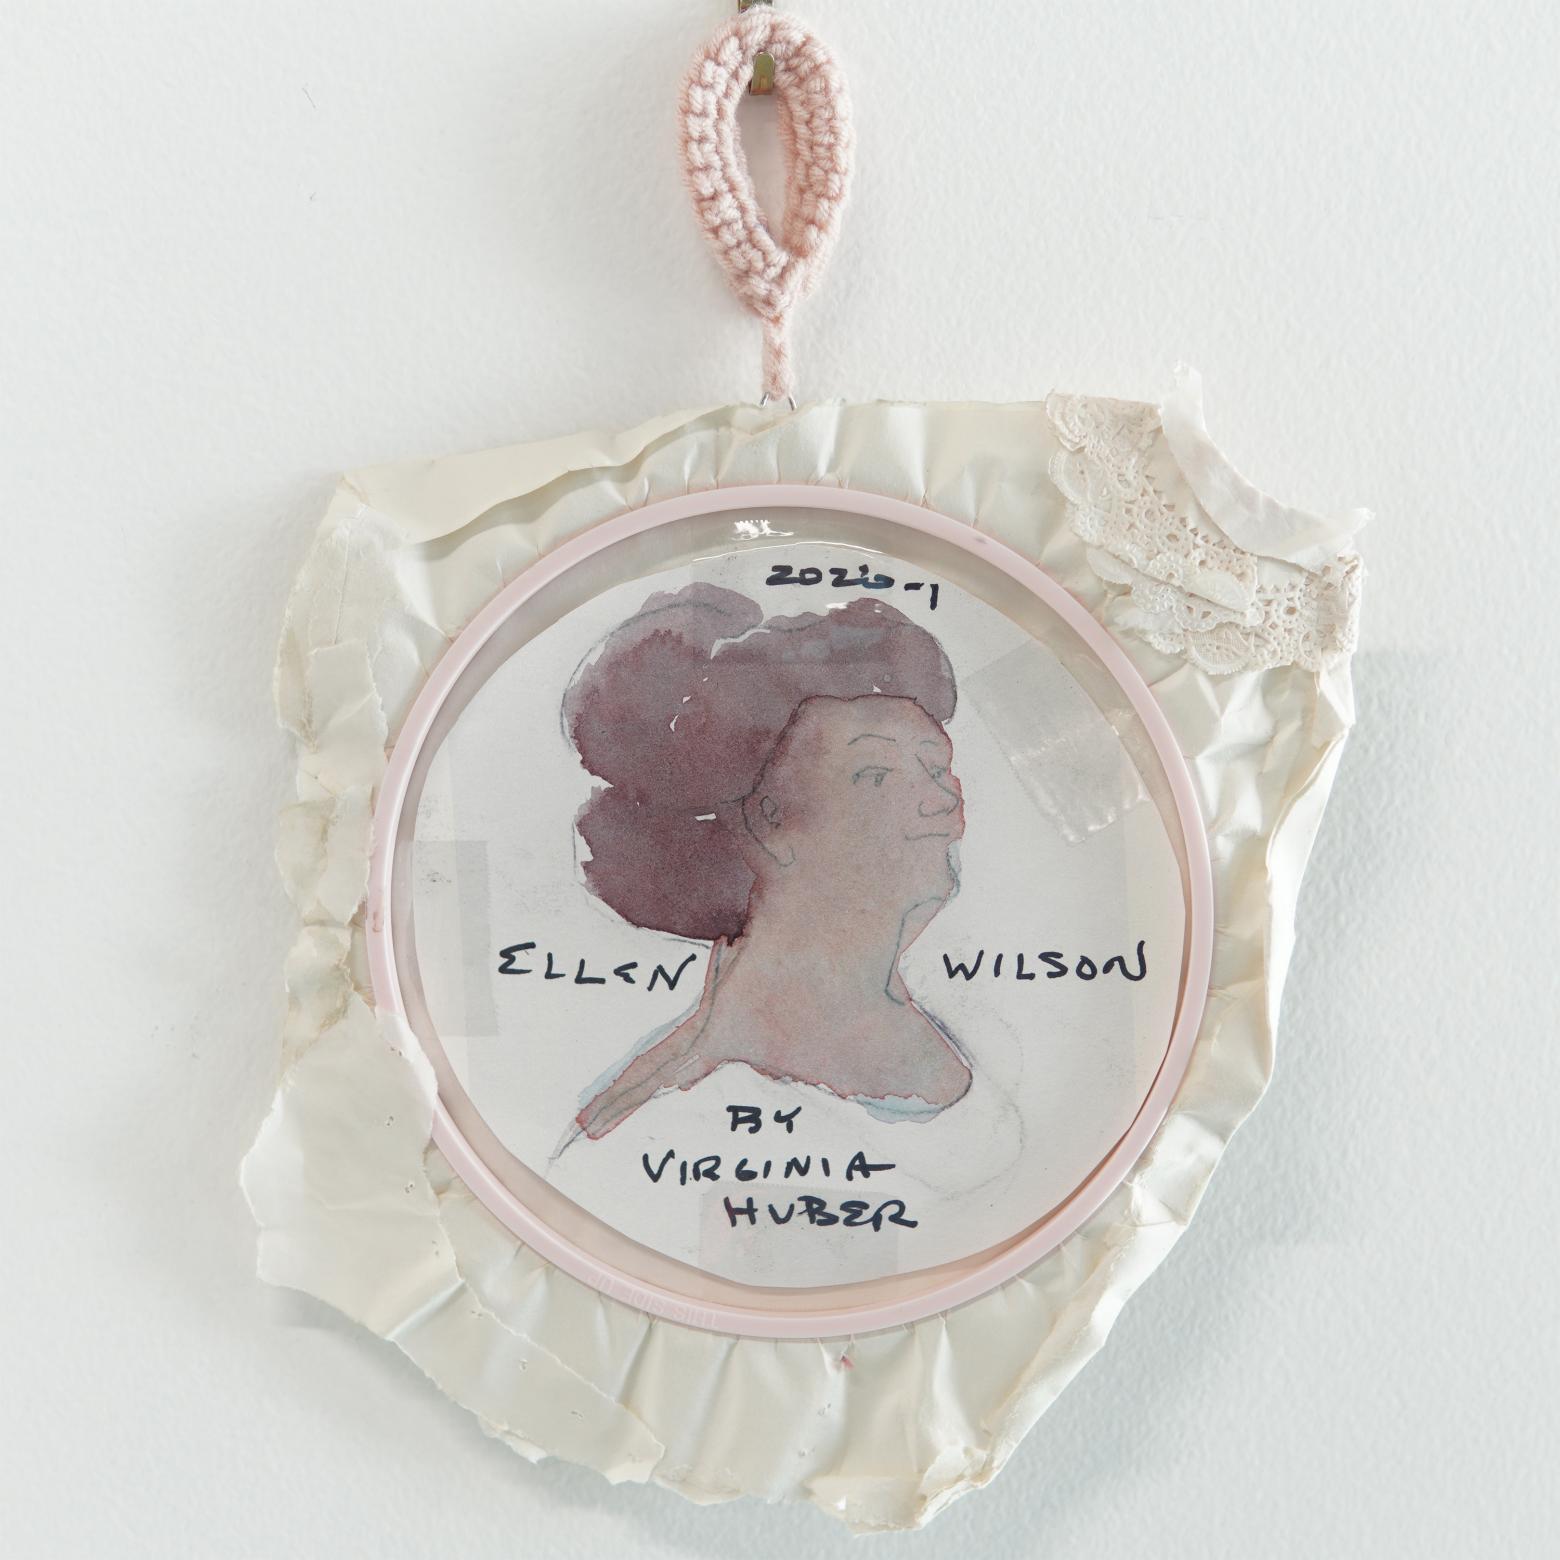 Ellen Wilson by Virginia Huber